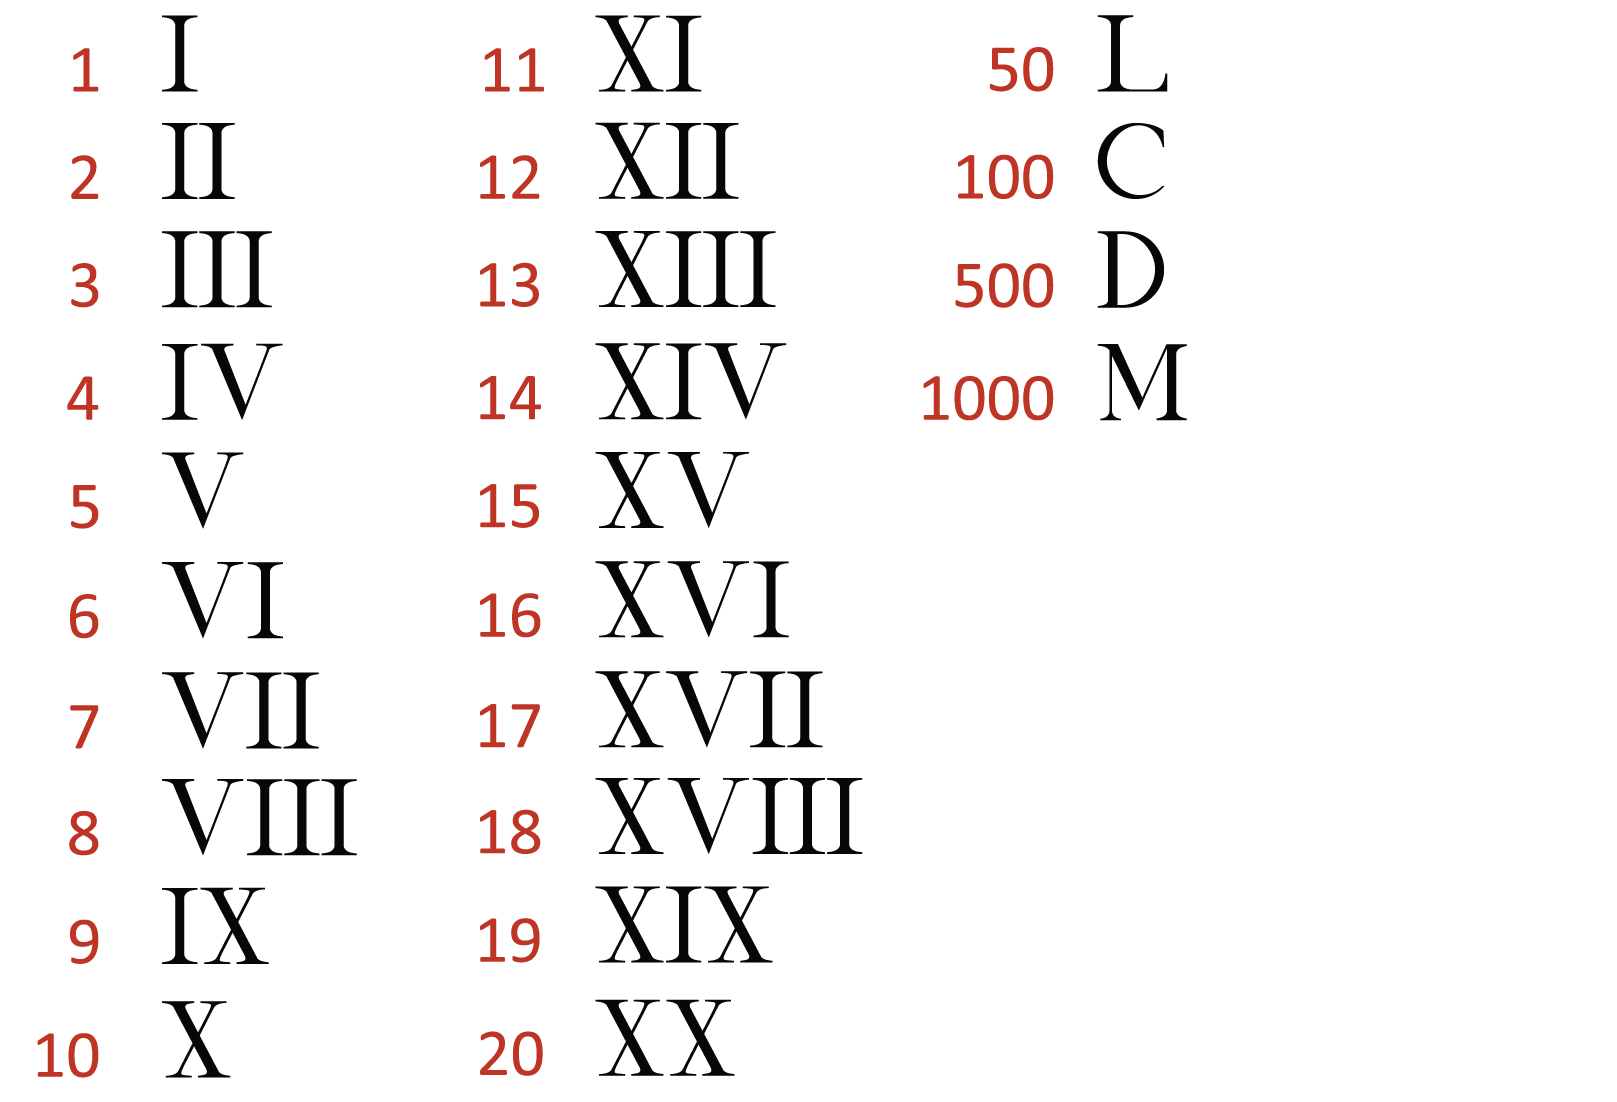 Римский счет. Века таблица римскими цифрами до 20. Римские цифры от 1 до 10000 таблица. Таблица римских цифр от 1 до 20. Латинские цифры от 20 до 100.